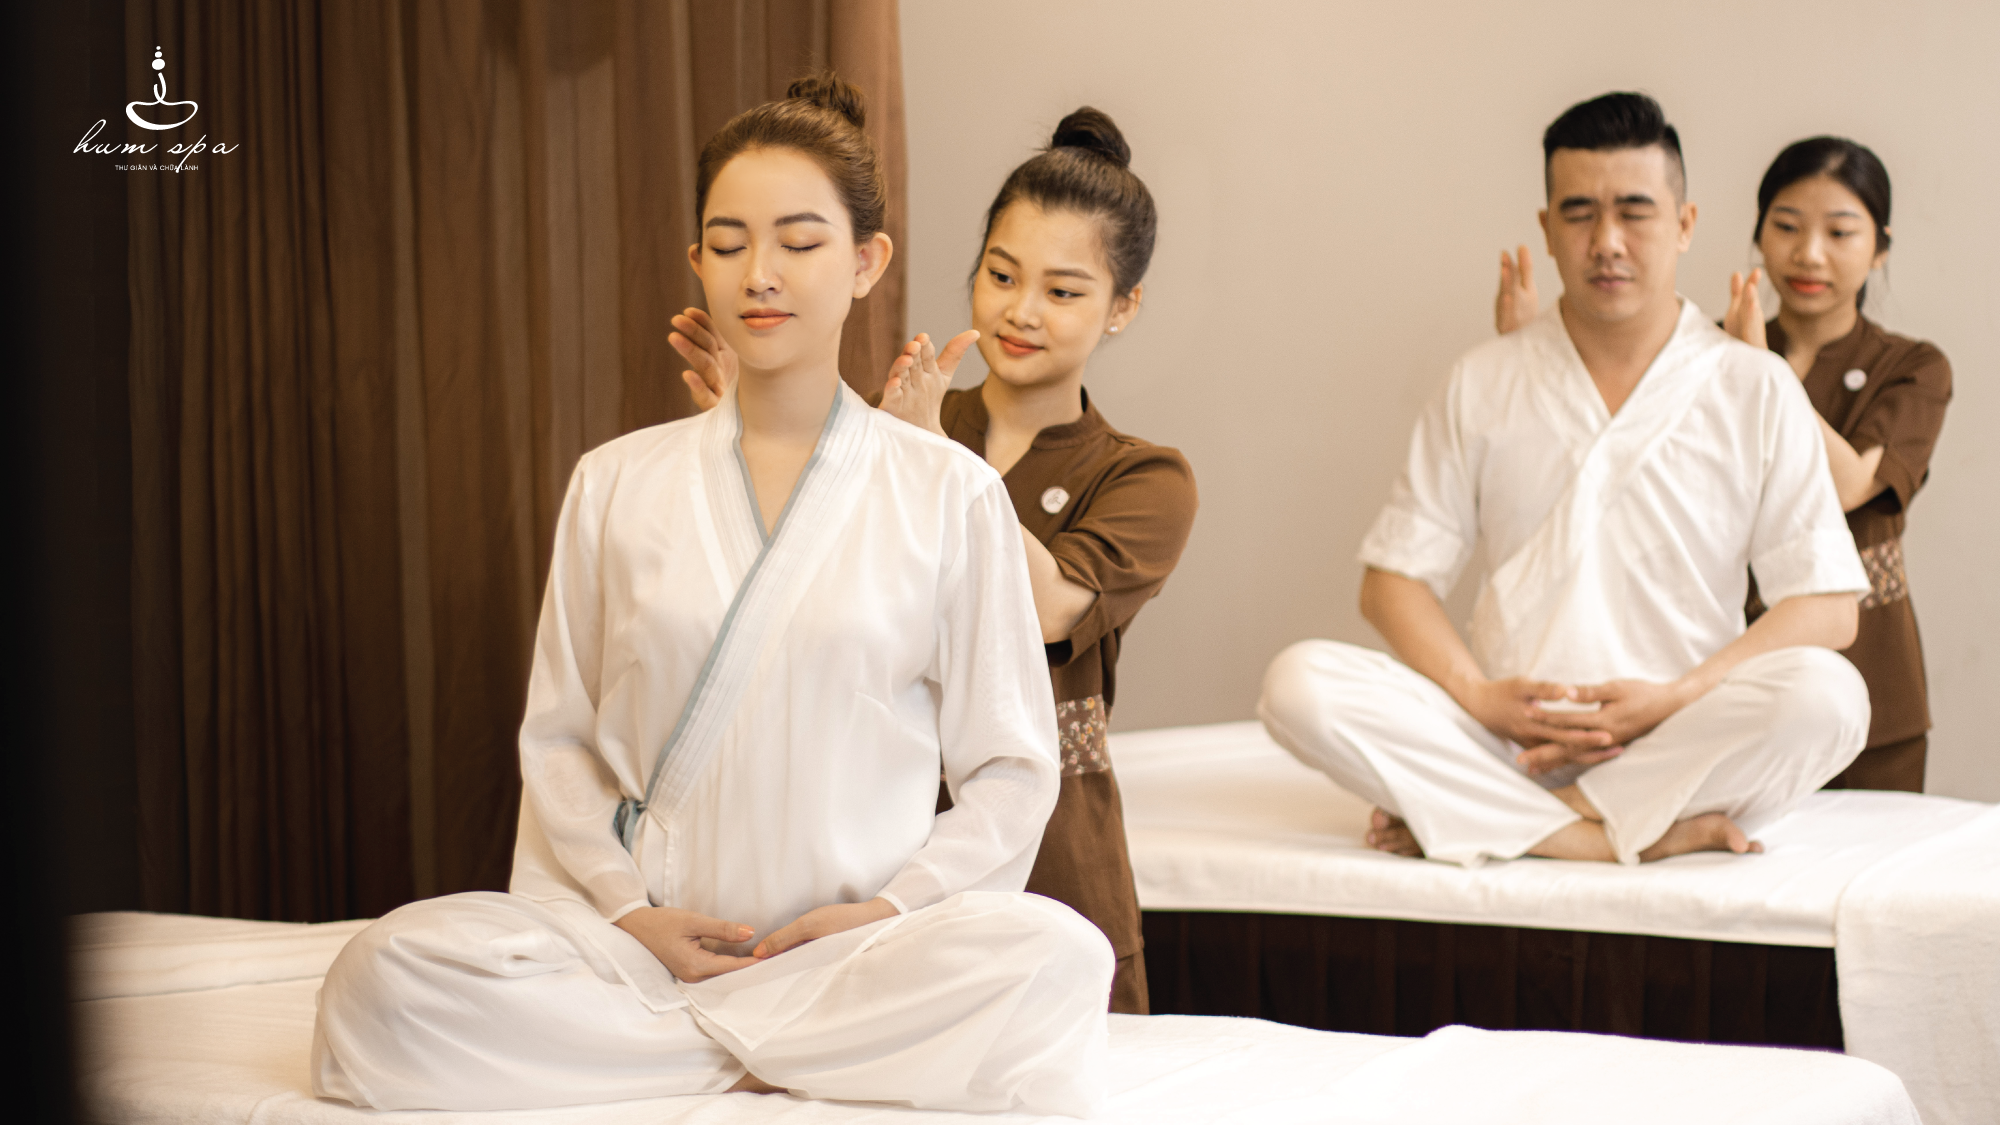 Massage y học cổ truyền là gì